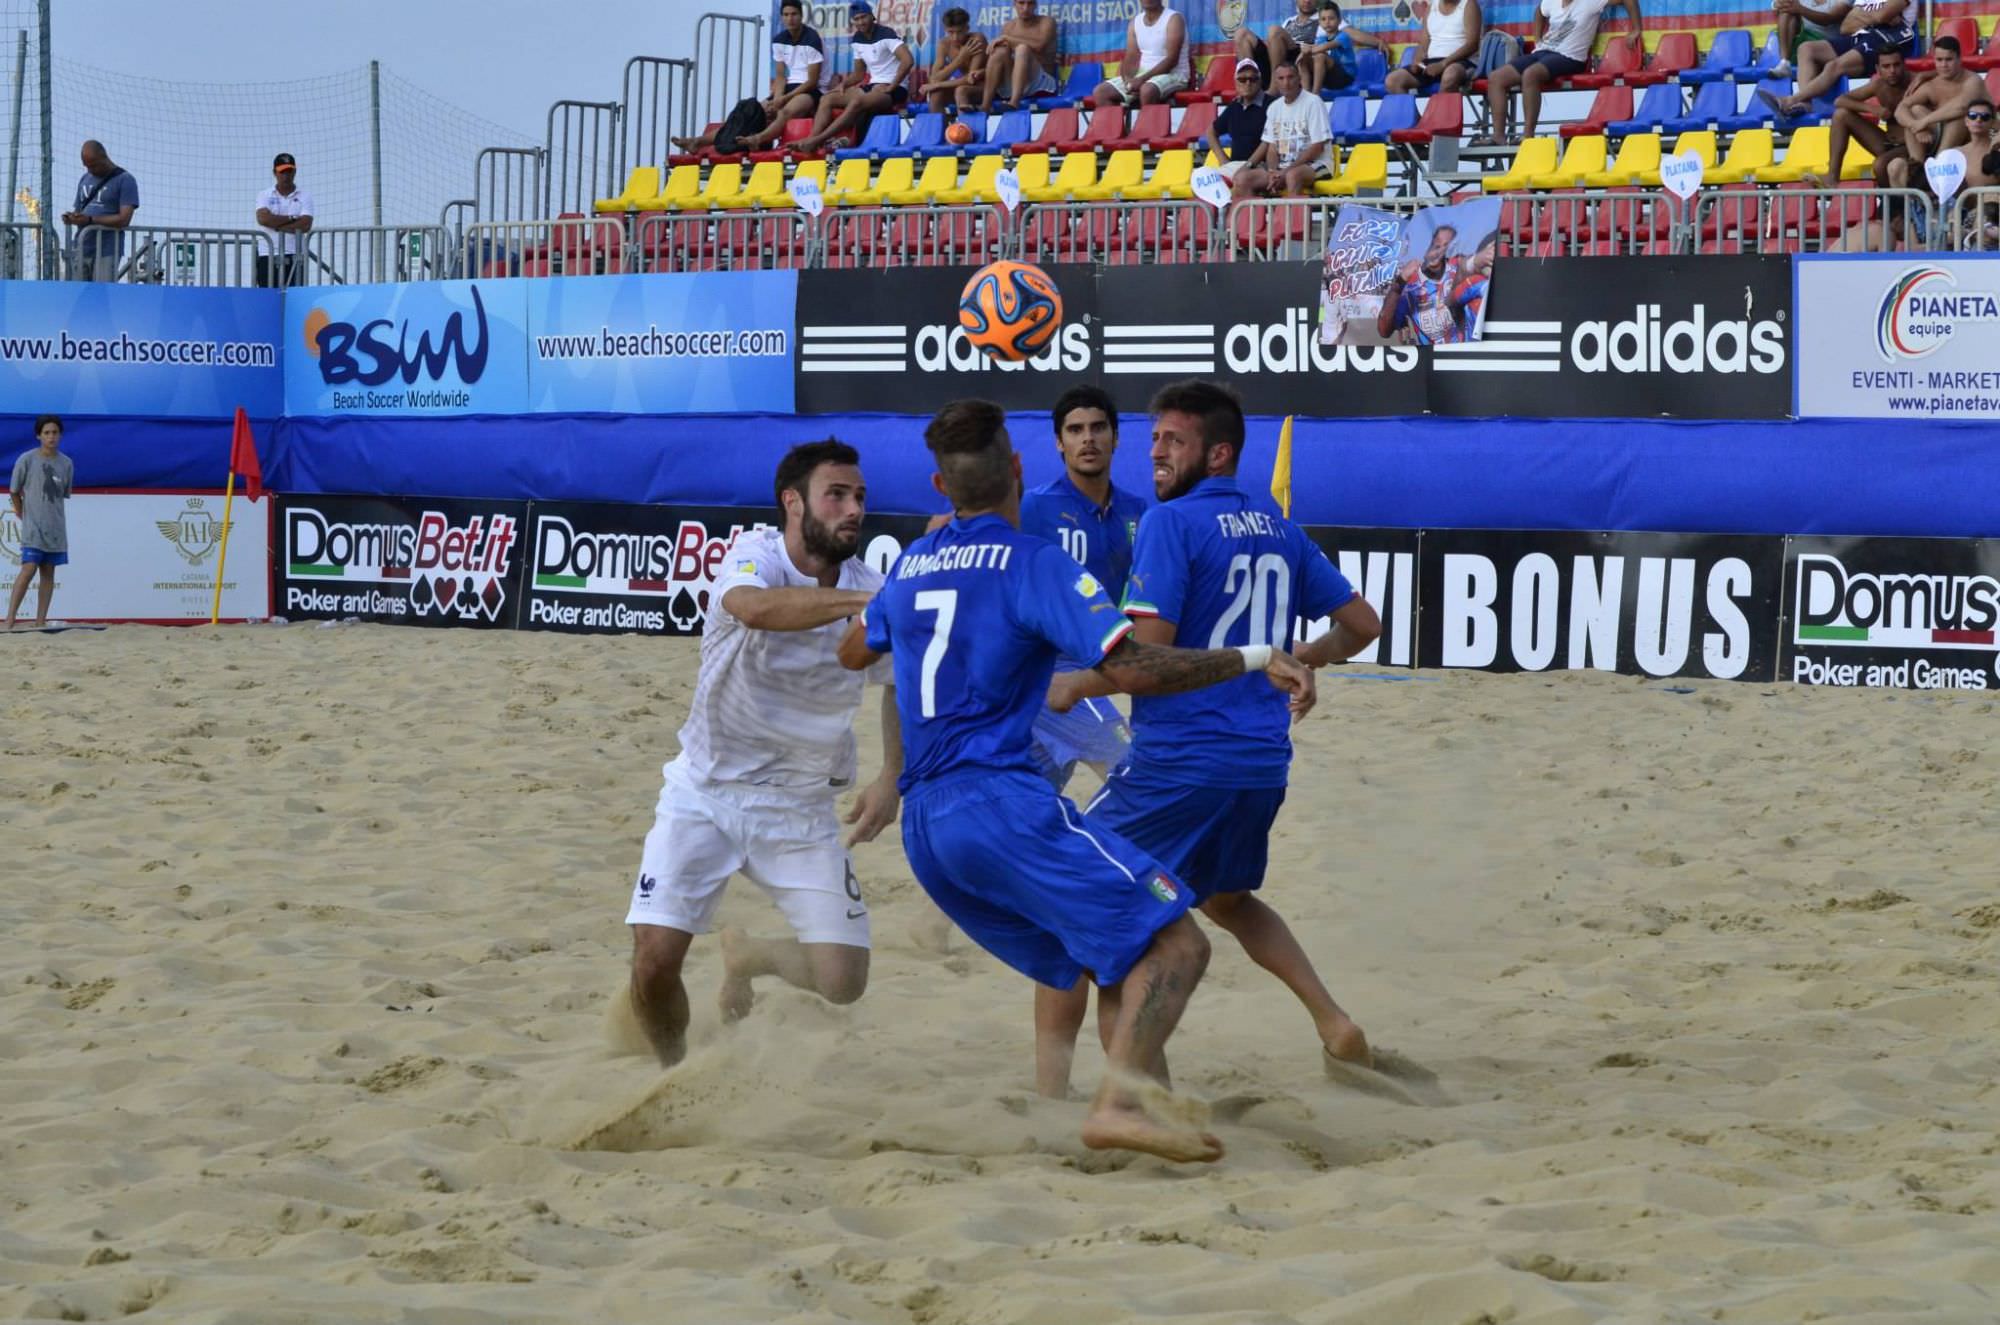 Mondiali di beach soccer, girone non semplice per l’Italia